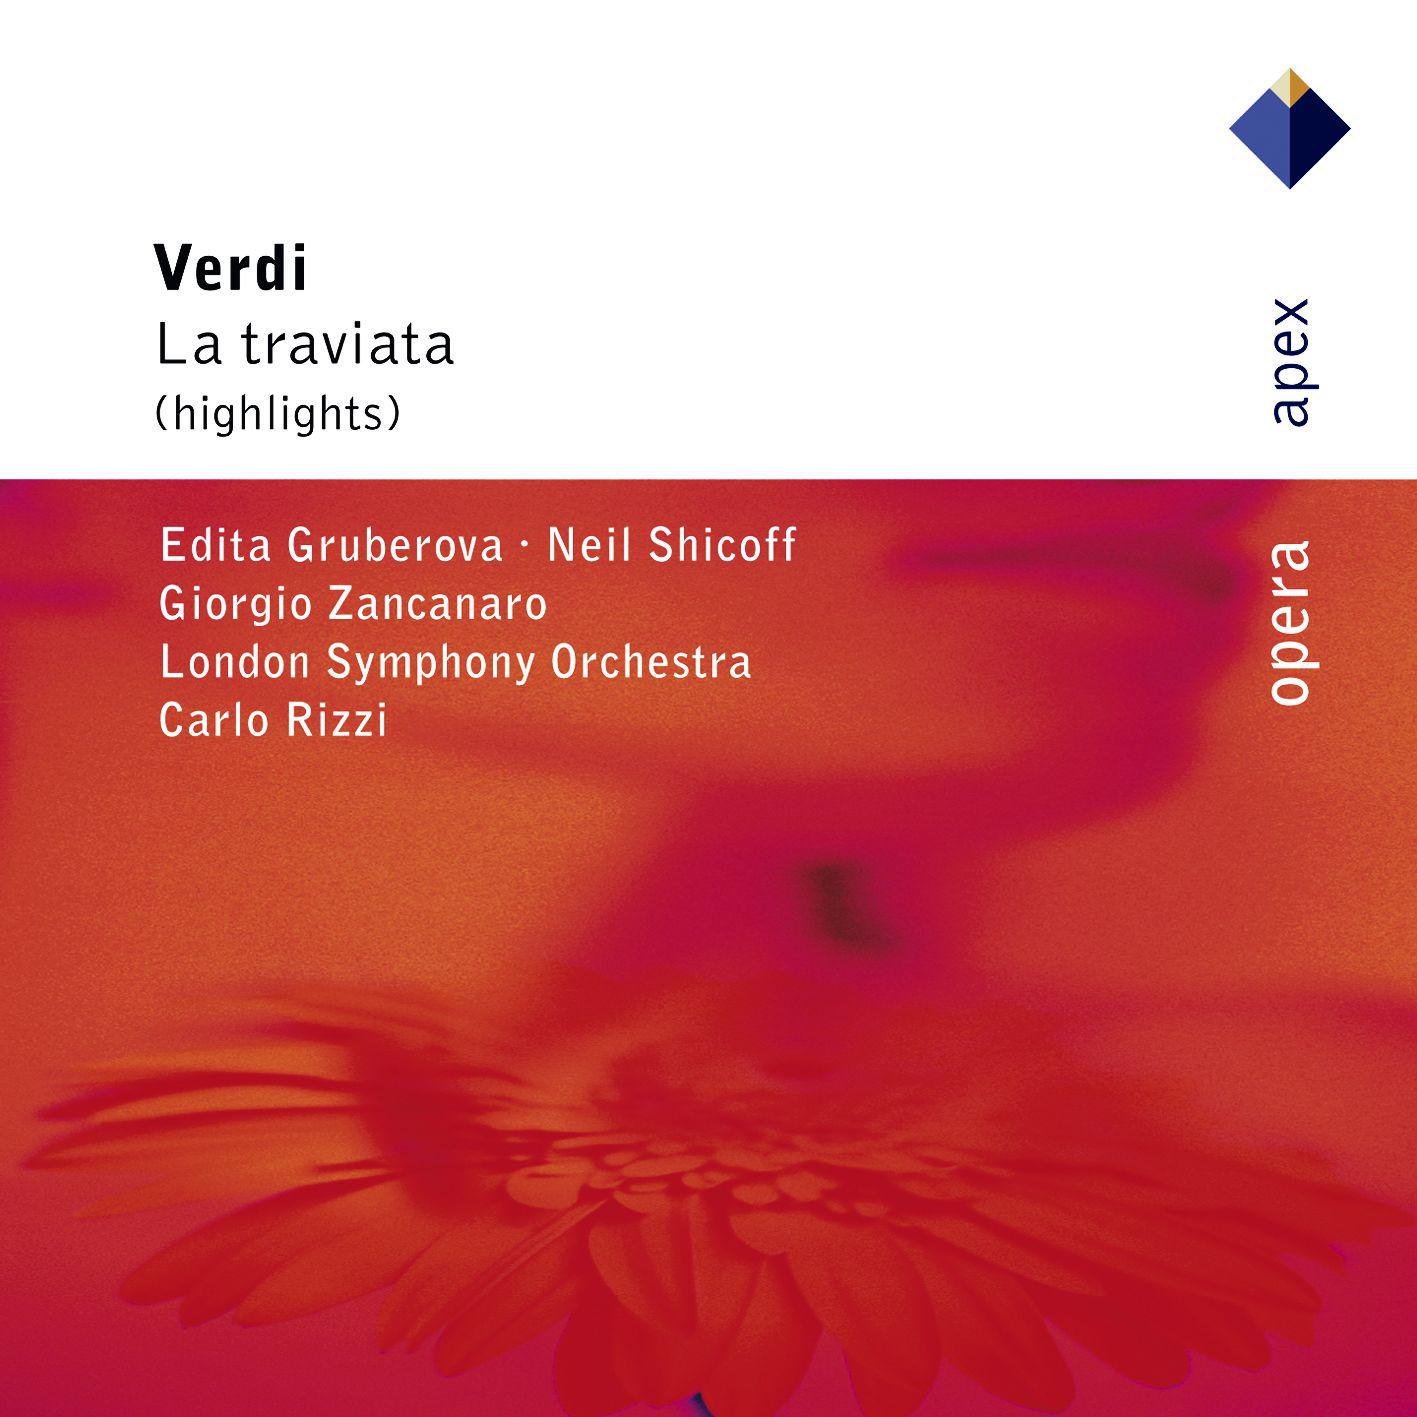 Verdi : La traviata [Highlights]